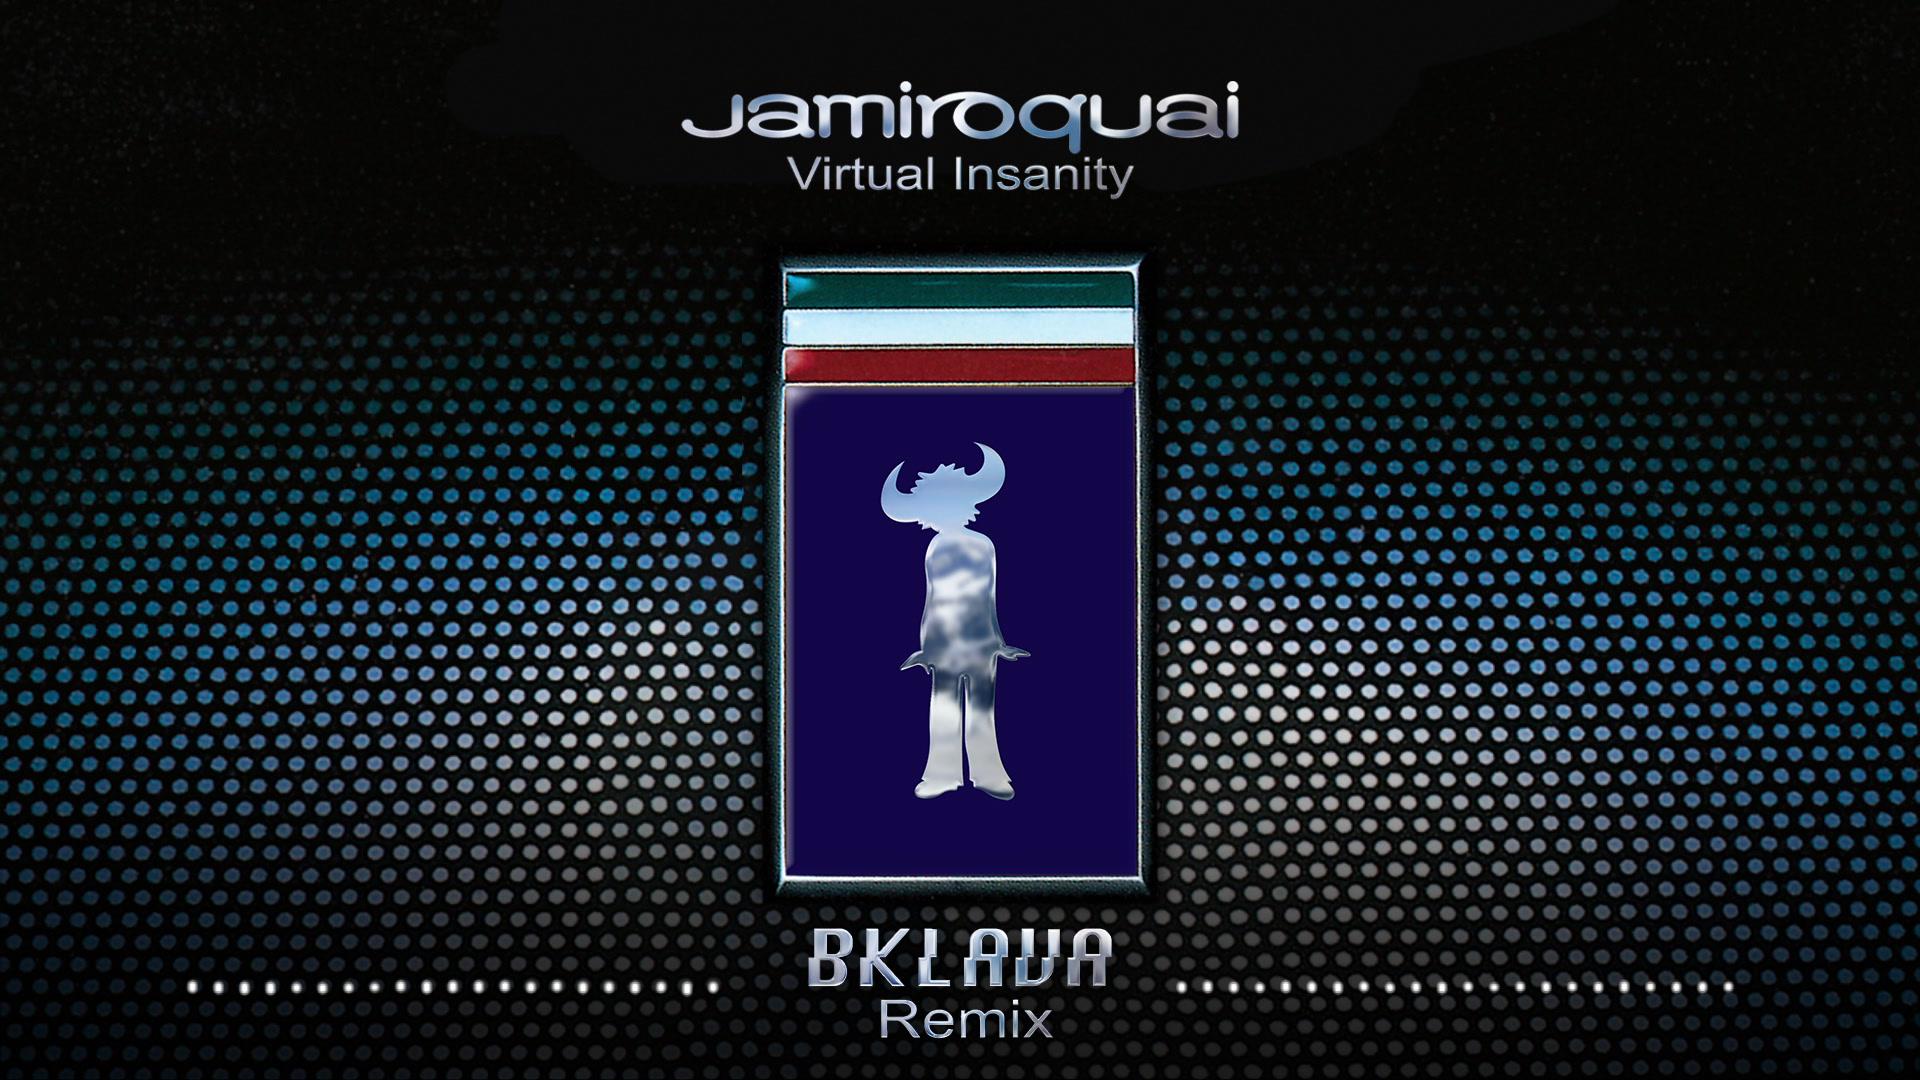 Jamiroquai - Virtual Insanity (Bklava Remix - Official Audio)